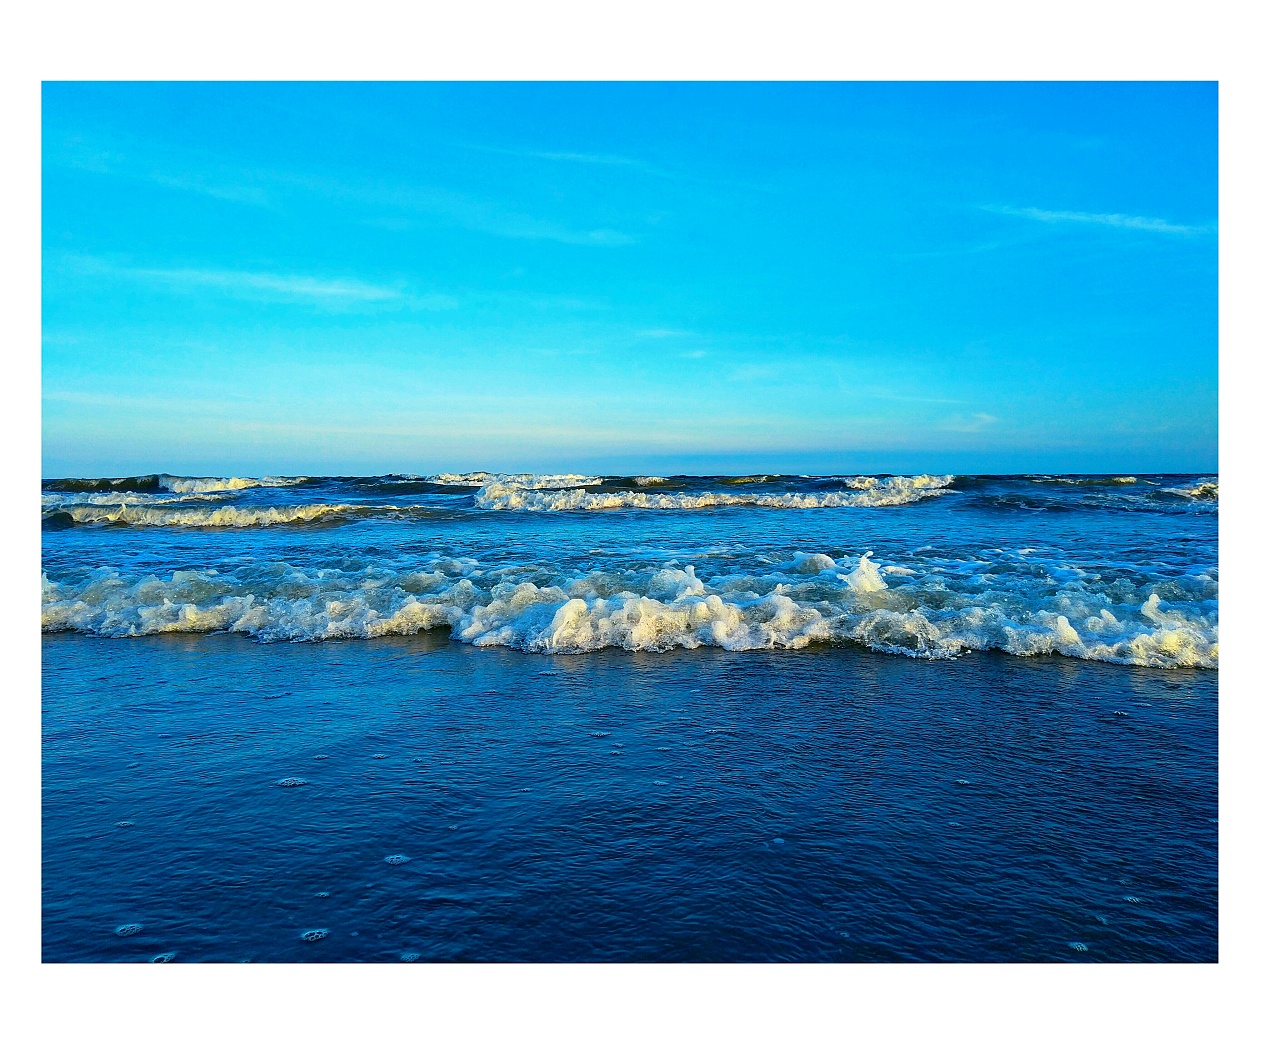 茂名-浪漫海滩-中关村在线摄影论坛